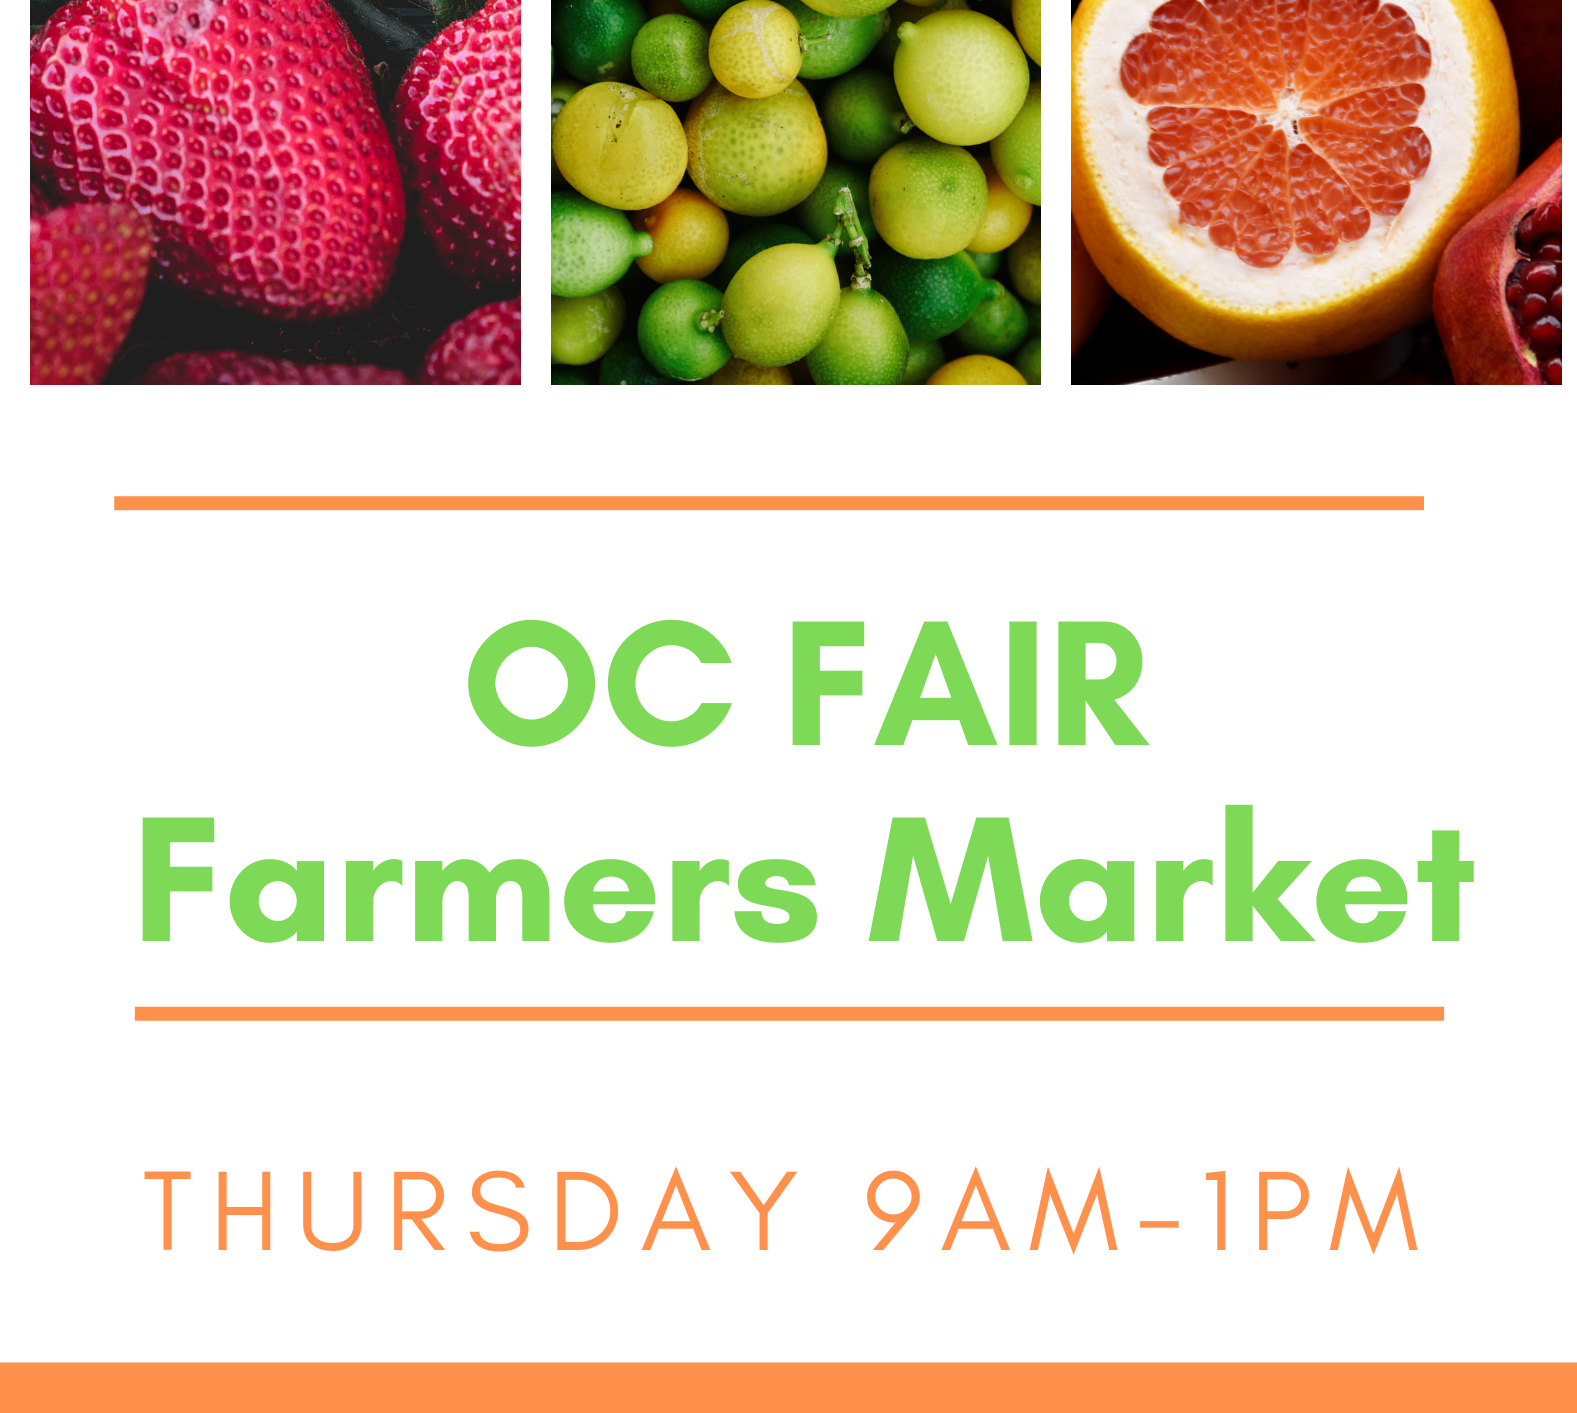 OC Fair Farmers Market